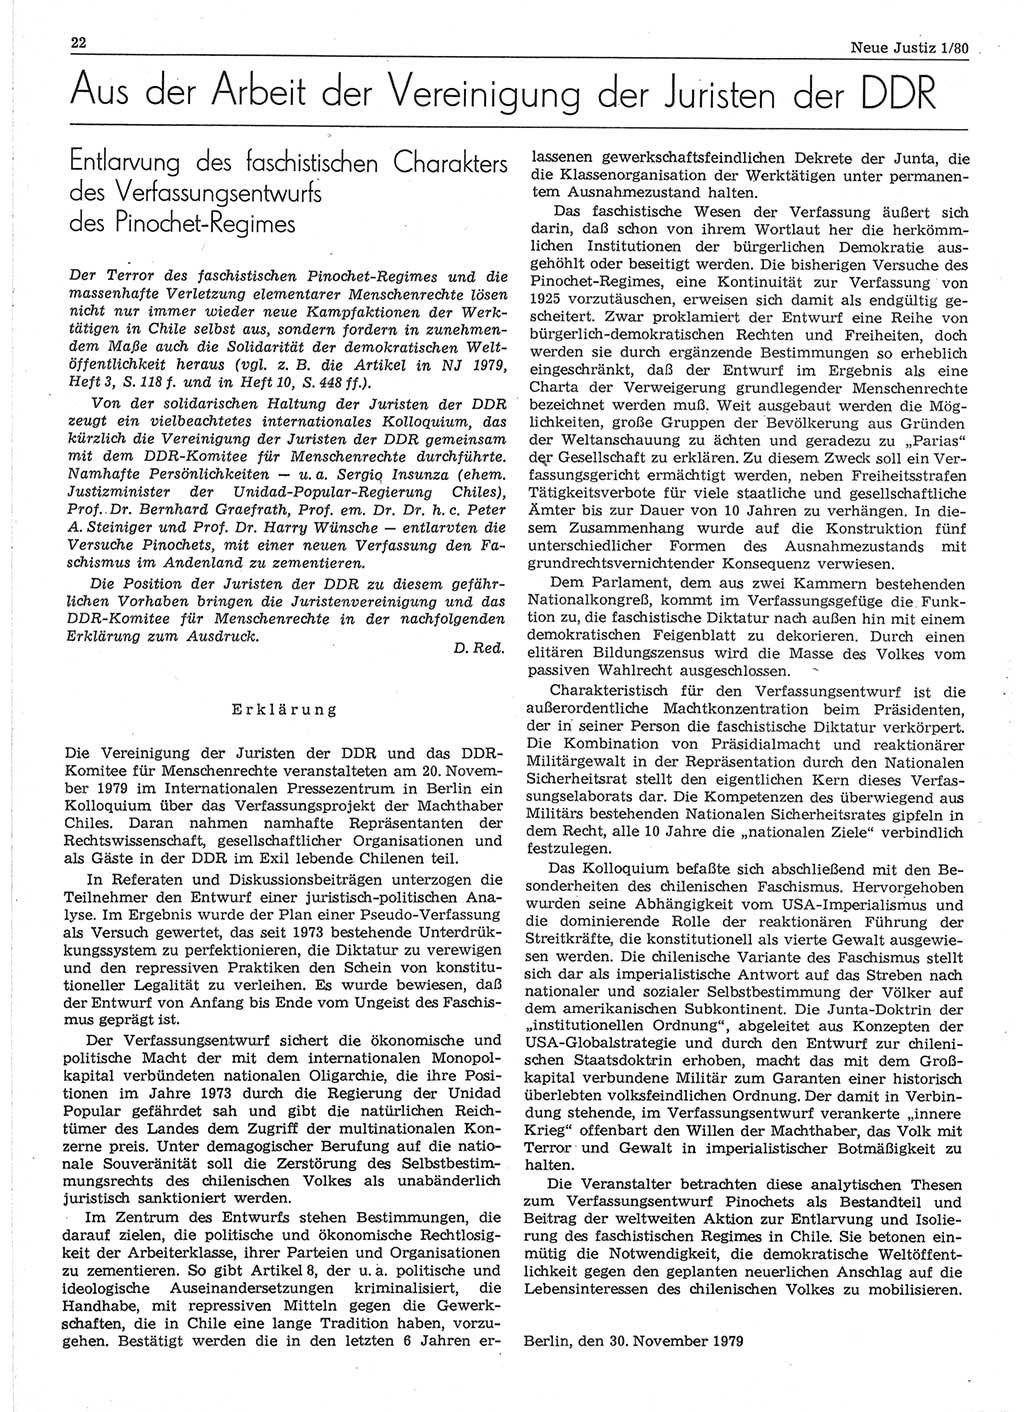 Neue Justiz (NJ), Zeitschrift für sozialistisches Recht und Gesetzlichkeit [Deutsche Demokratische Republik (DDR)], 34. Jahrgang 1980, Seite 22 (NJ DDR 1980, S. 22)